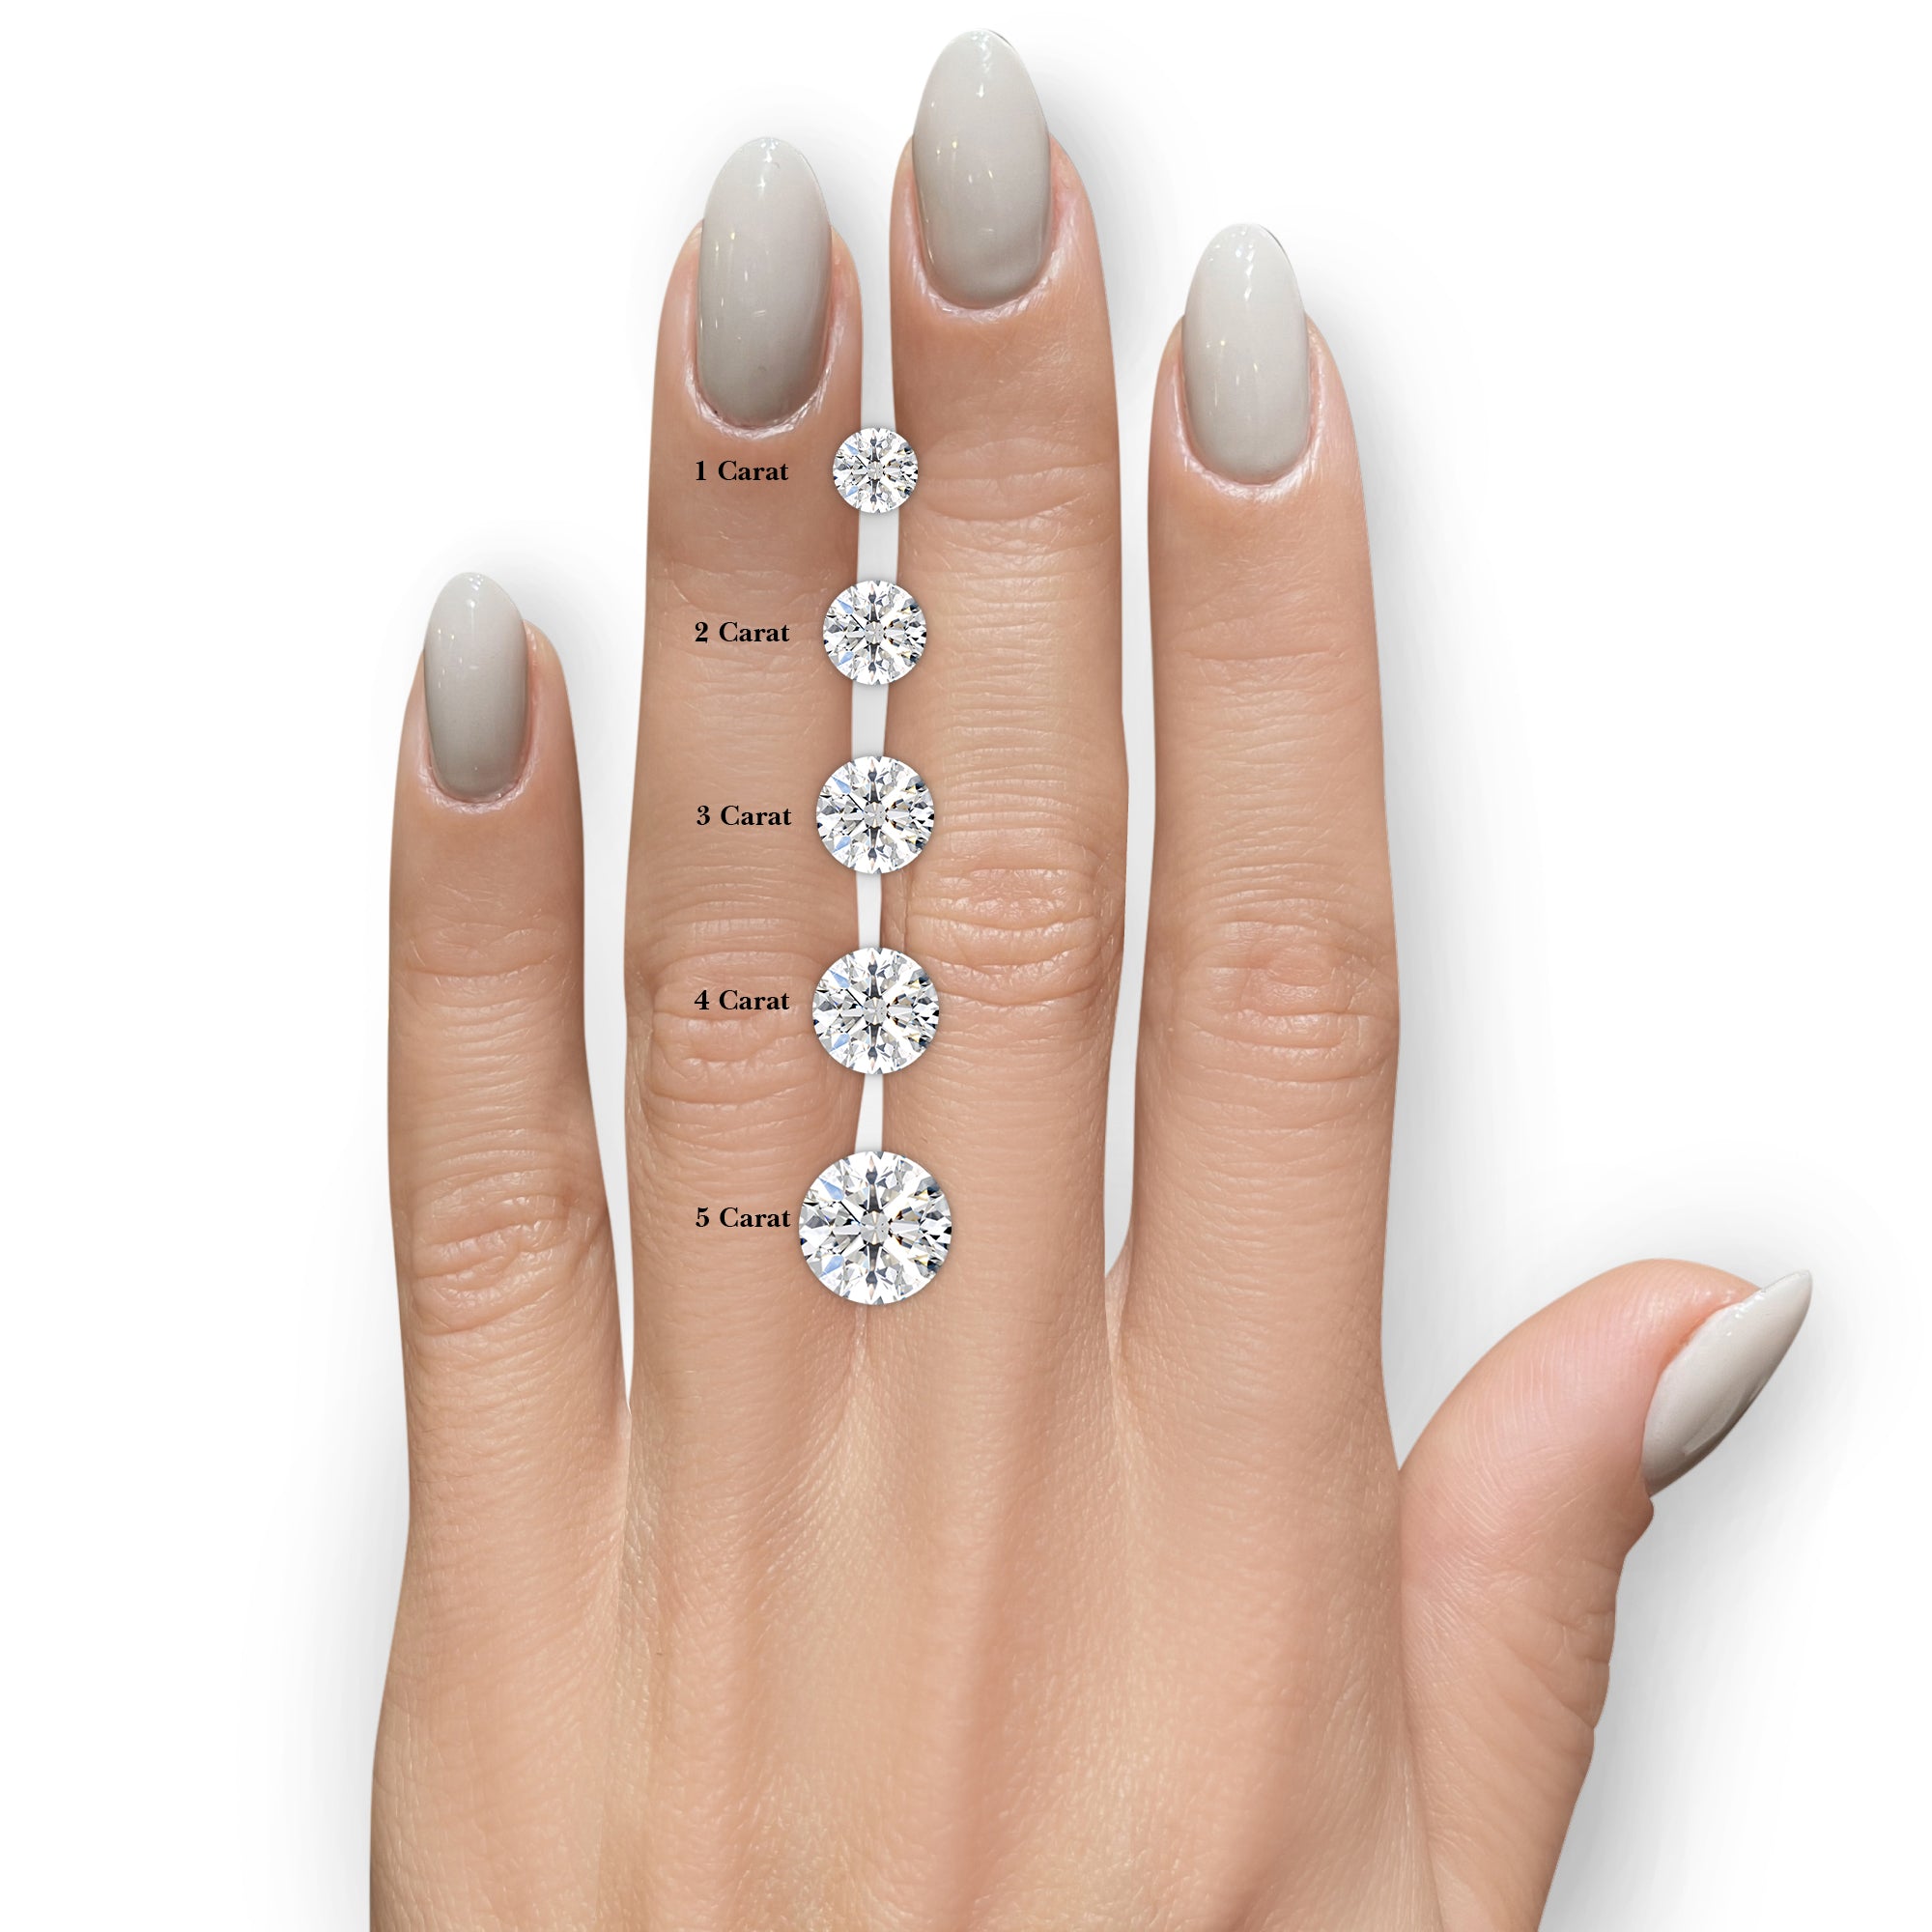 Ava Moissanite & Diamonds Ring -14K White Gold